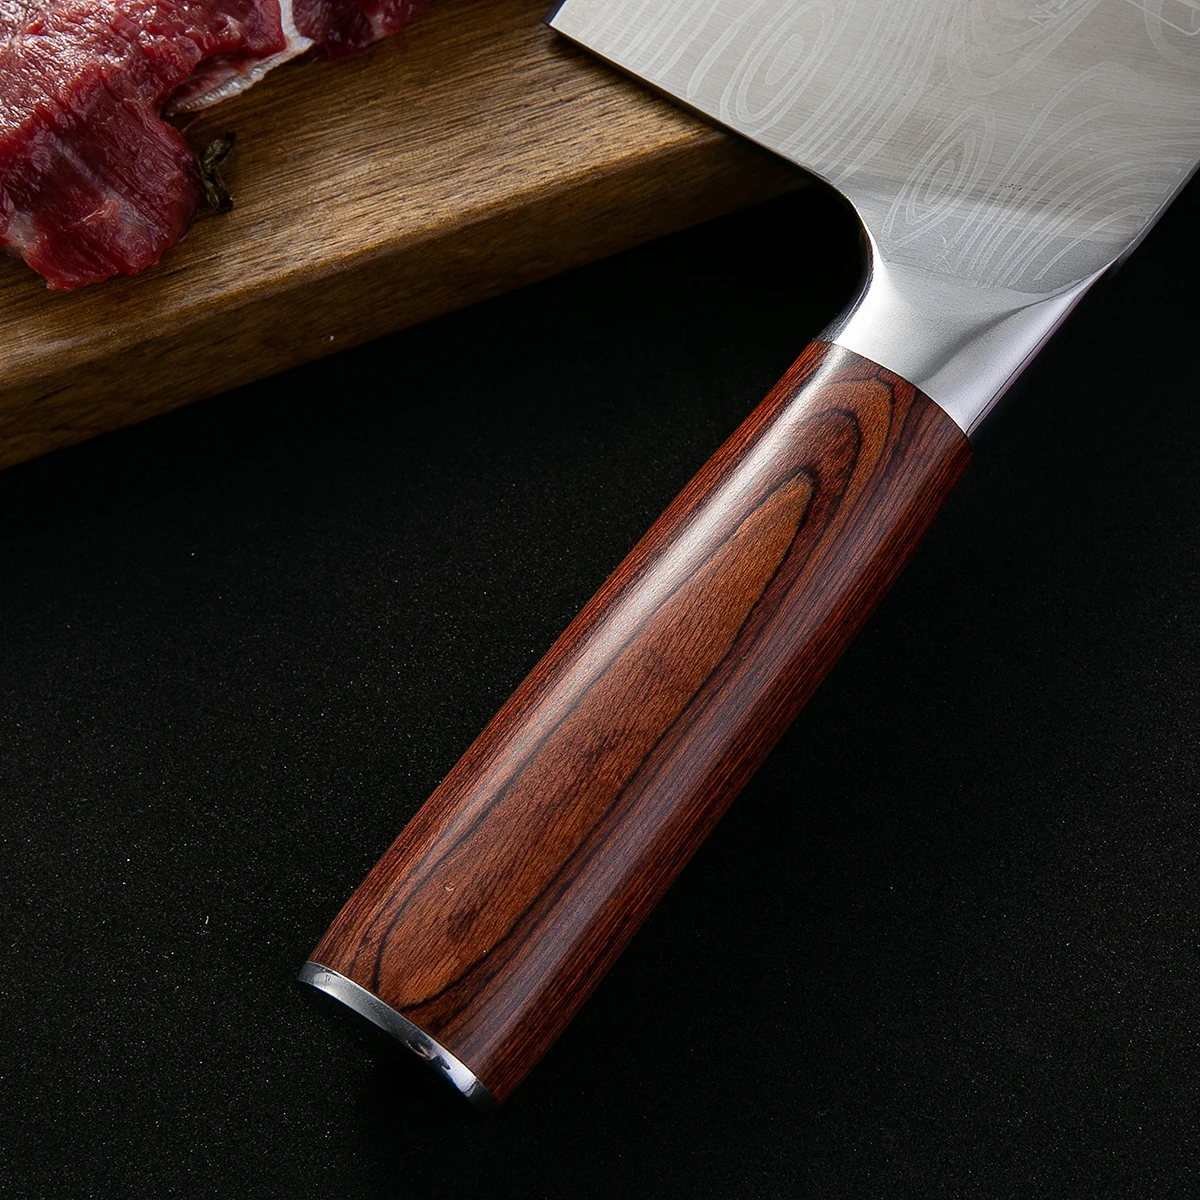 DAOMACHEN кухонный нож из нержавеющей стали, профессиональный нож шеф-повара, китайский кухонный нож шеф-повара